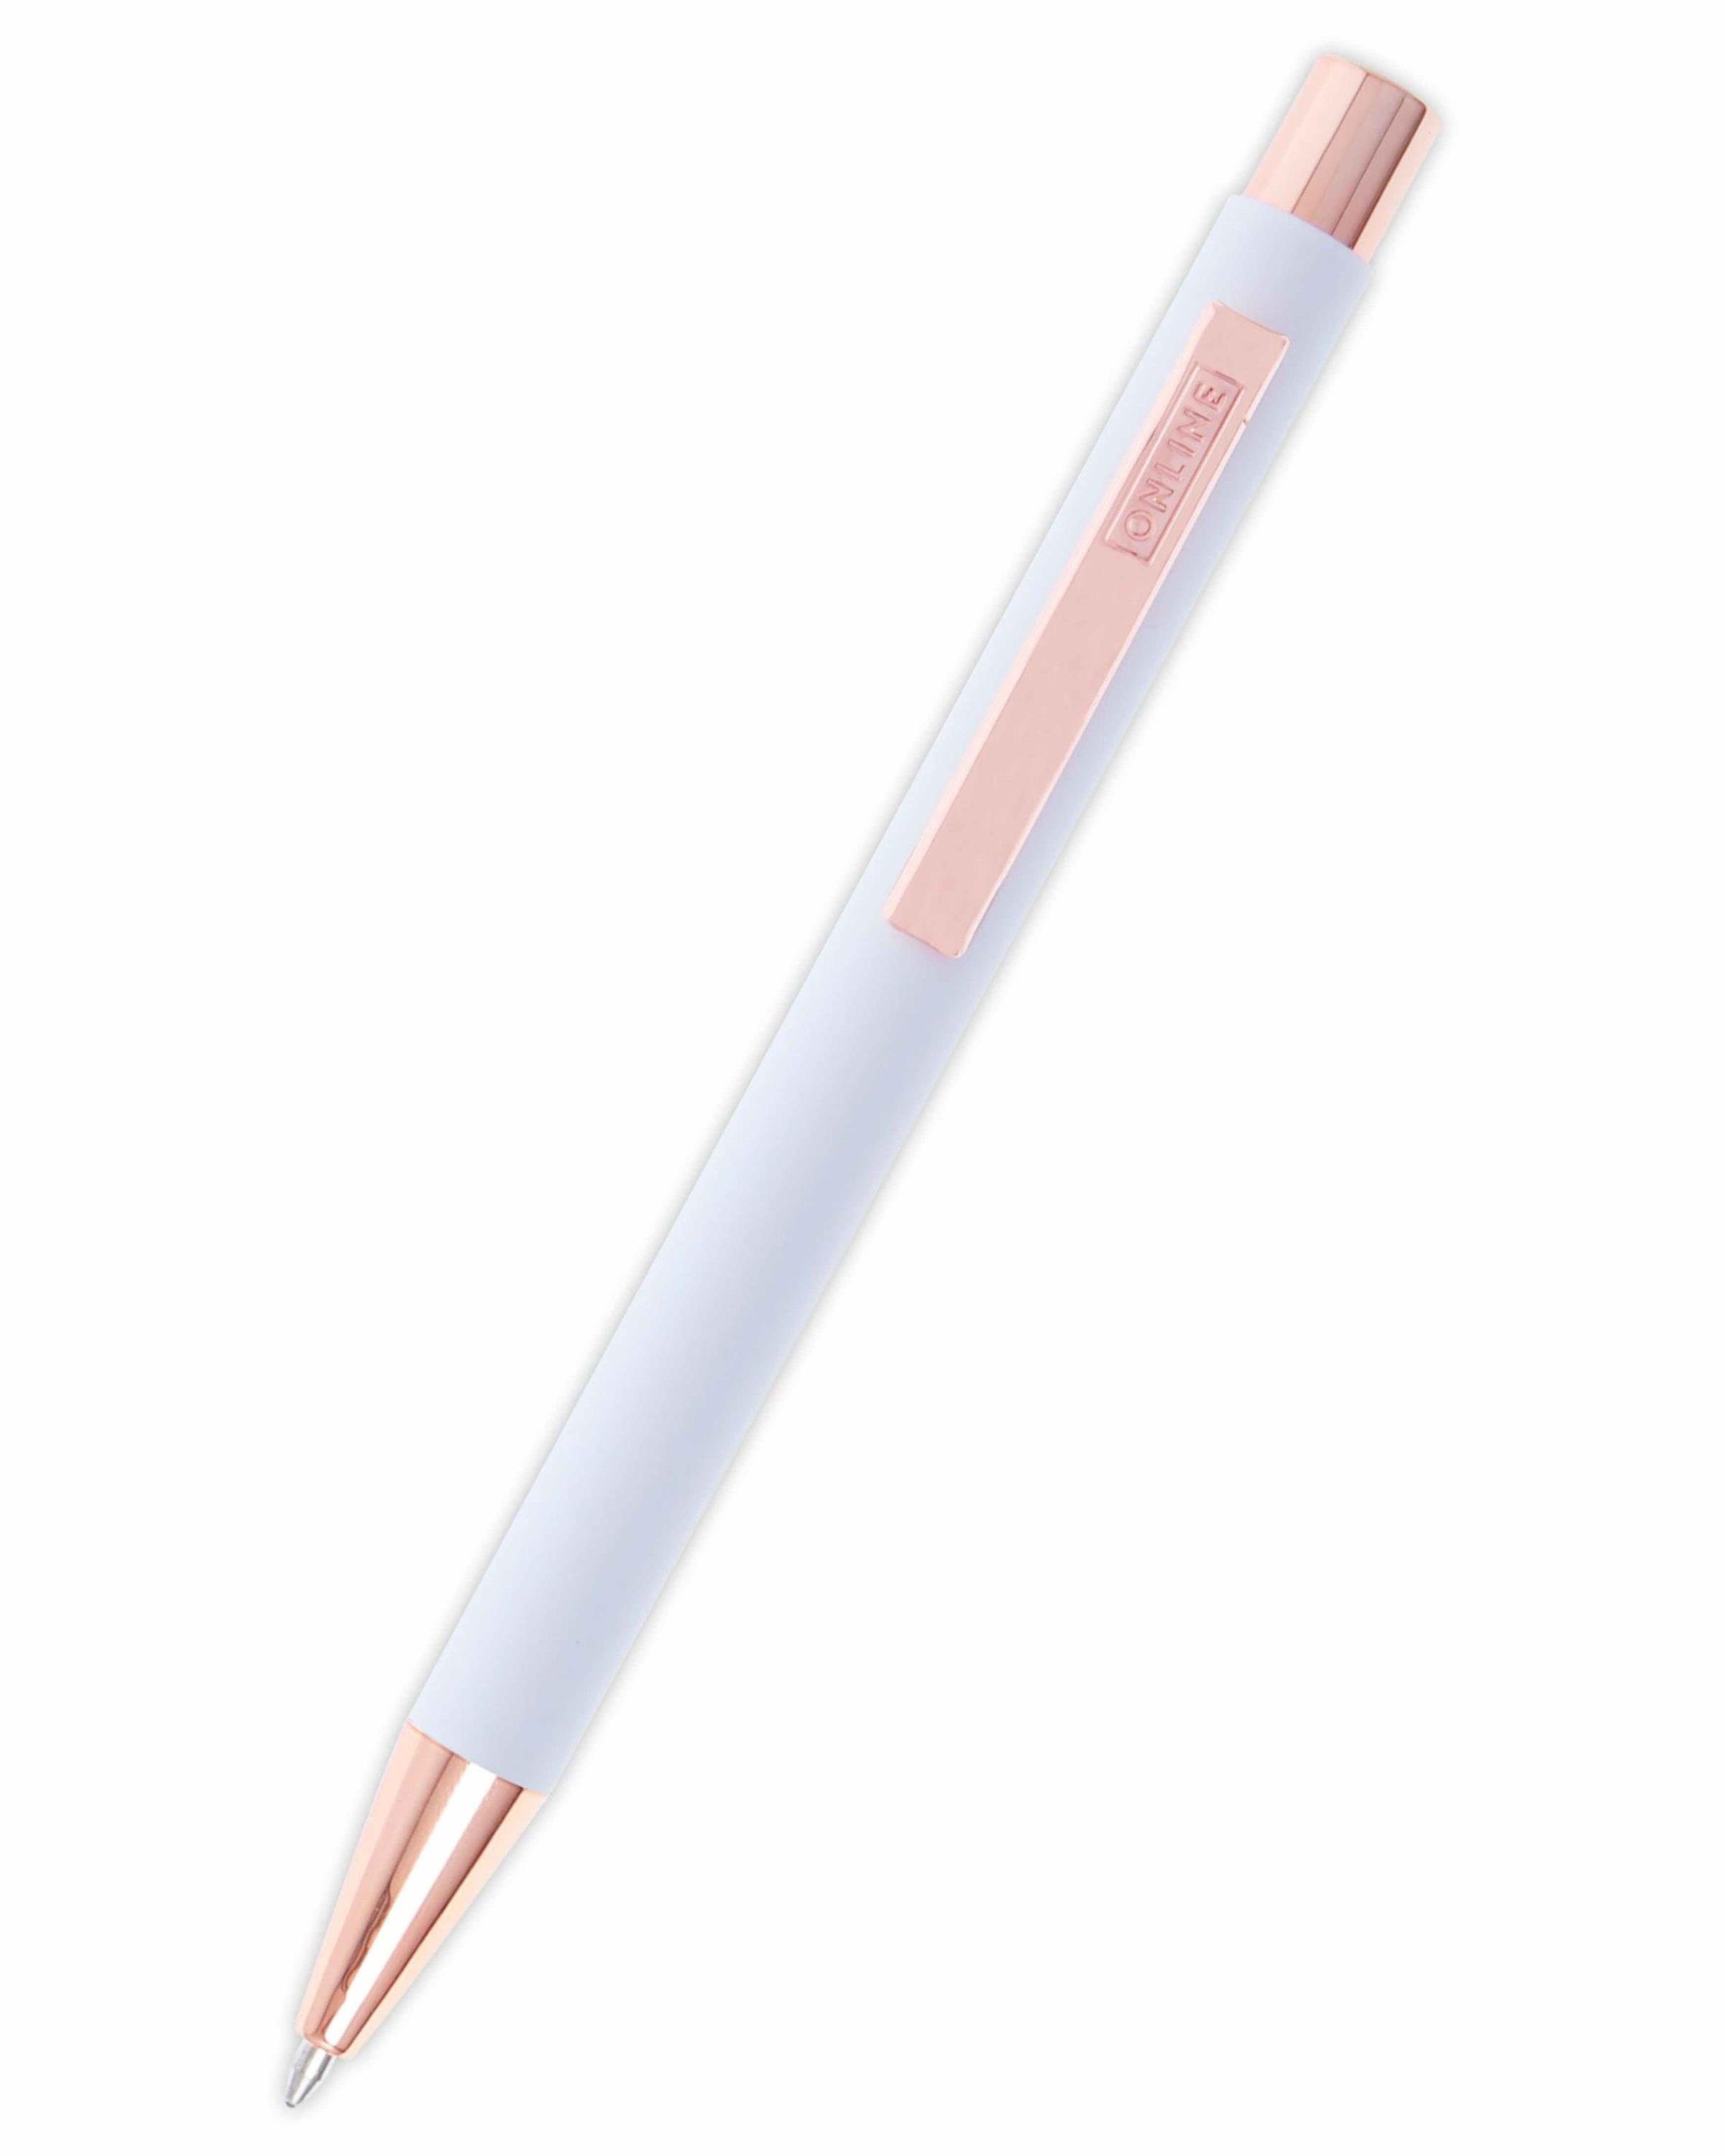 Online Pen Kugelschreiber Soft Metal Druckkugelschreiber, aus Aluminium, mit Softtouch-Feeling